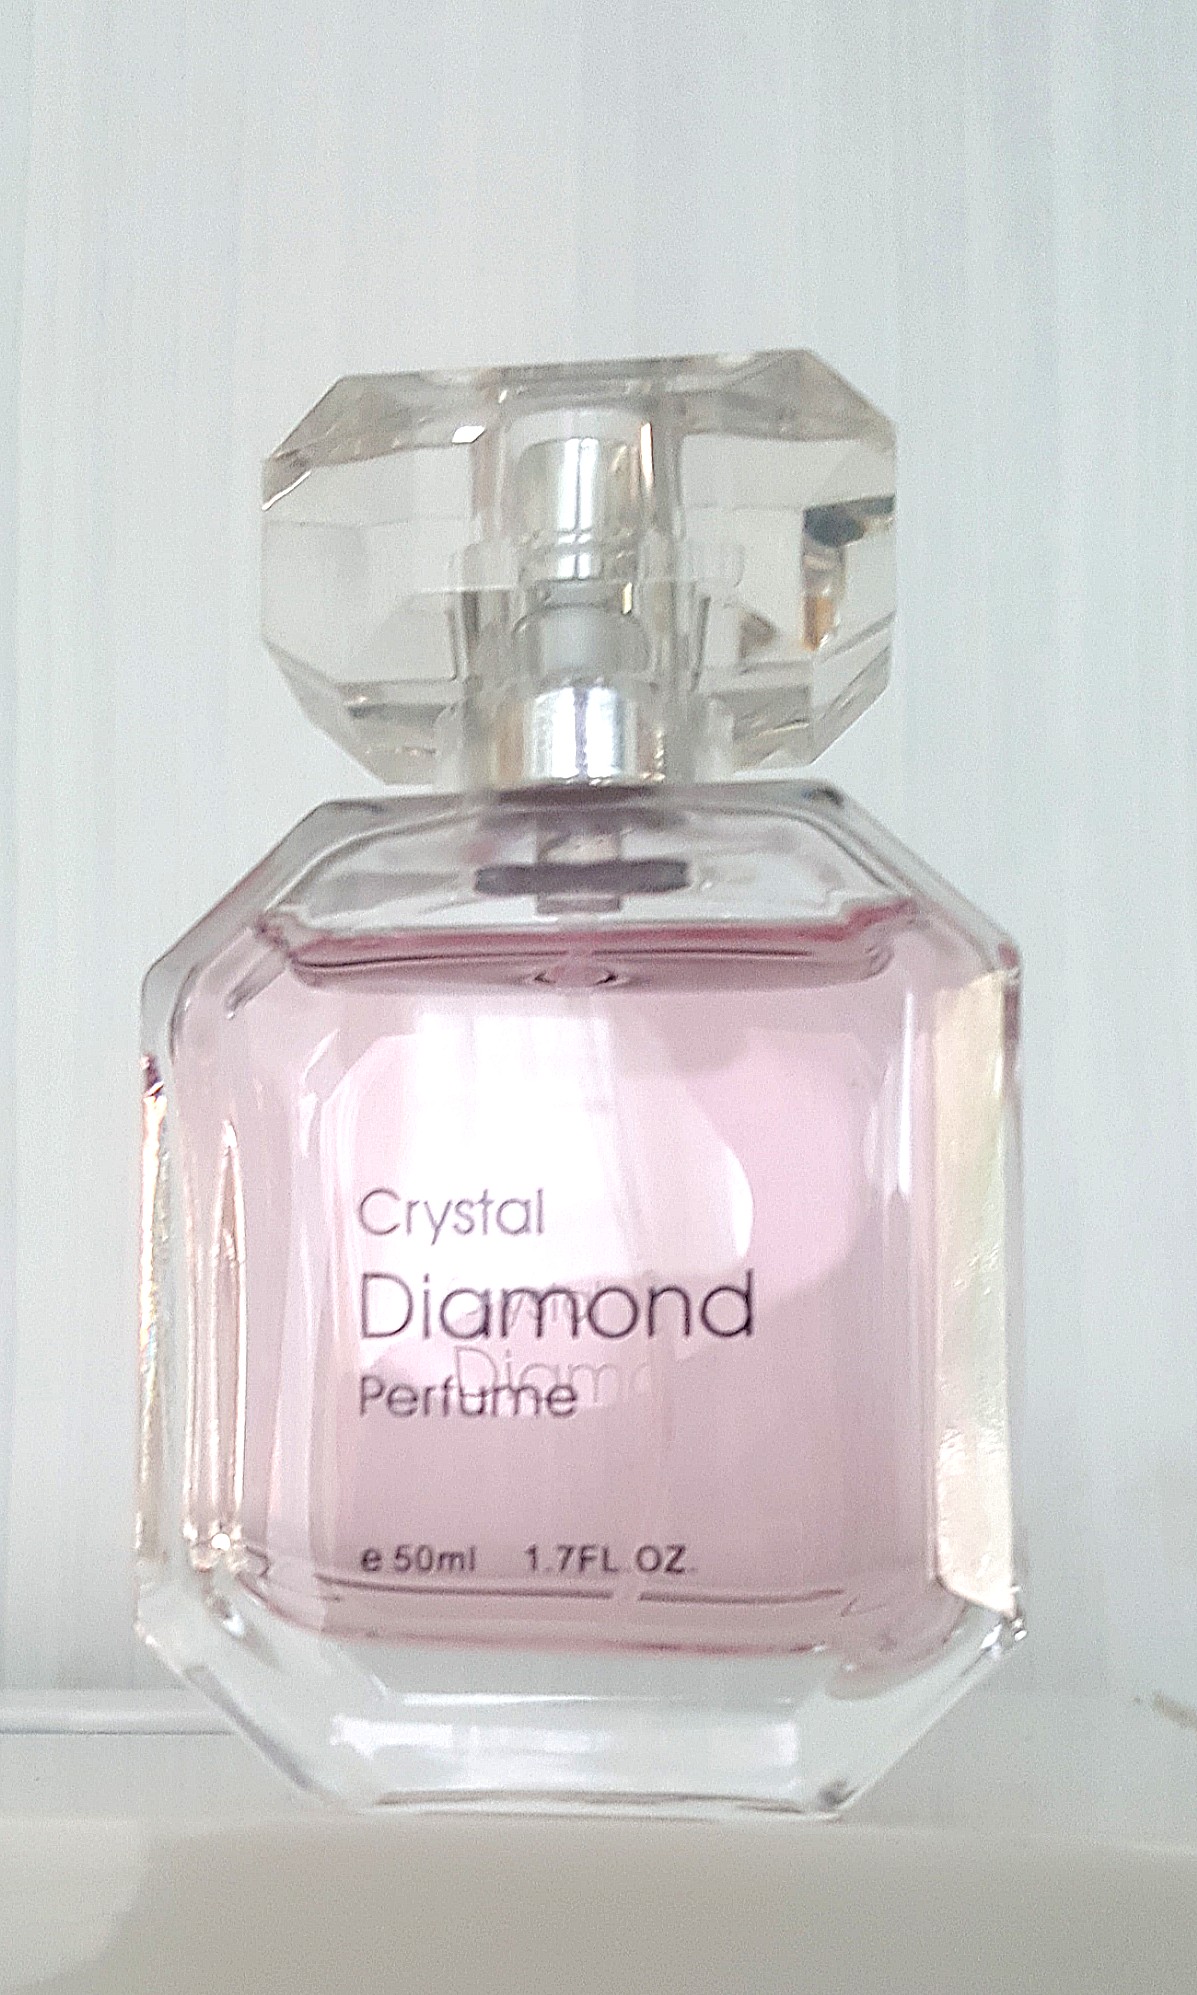 price of crystal diamond perfume